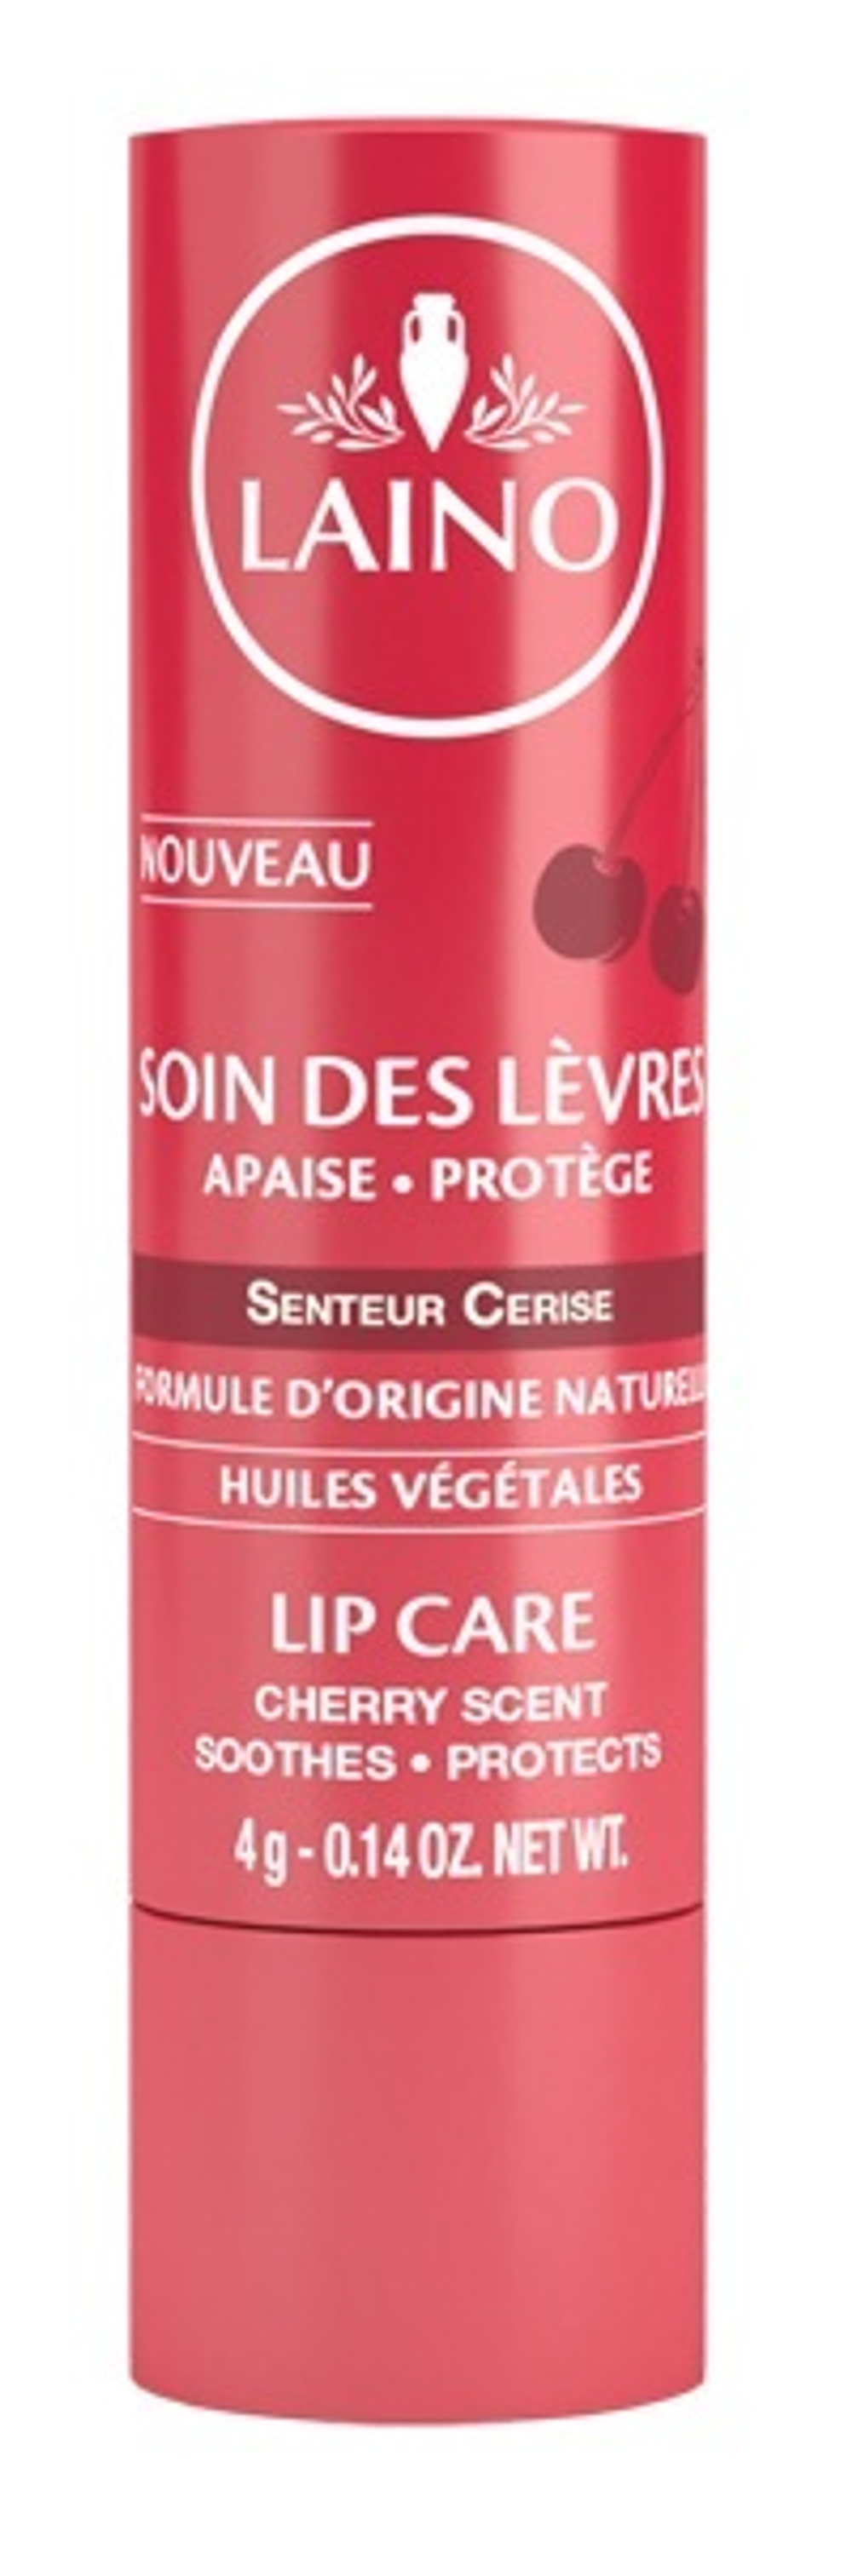 Лено Бальзам-стик для губ Вишня Laino Lip Care Cherry Scent 4 гр